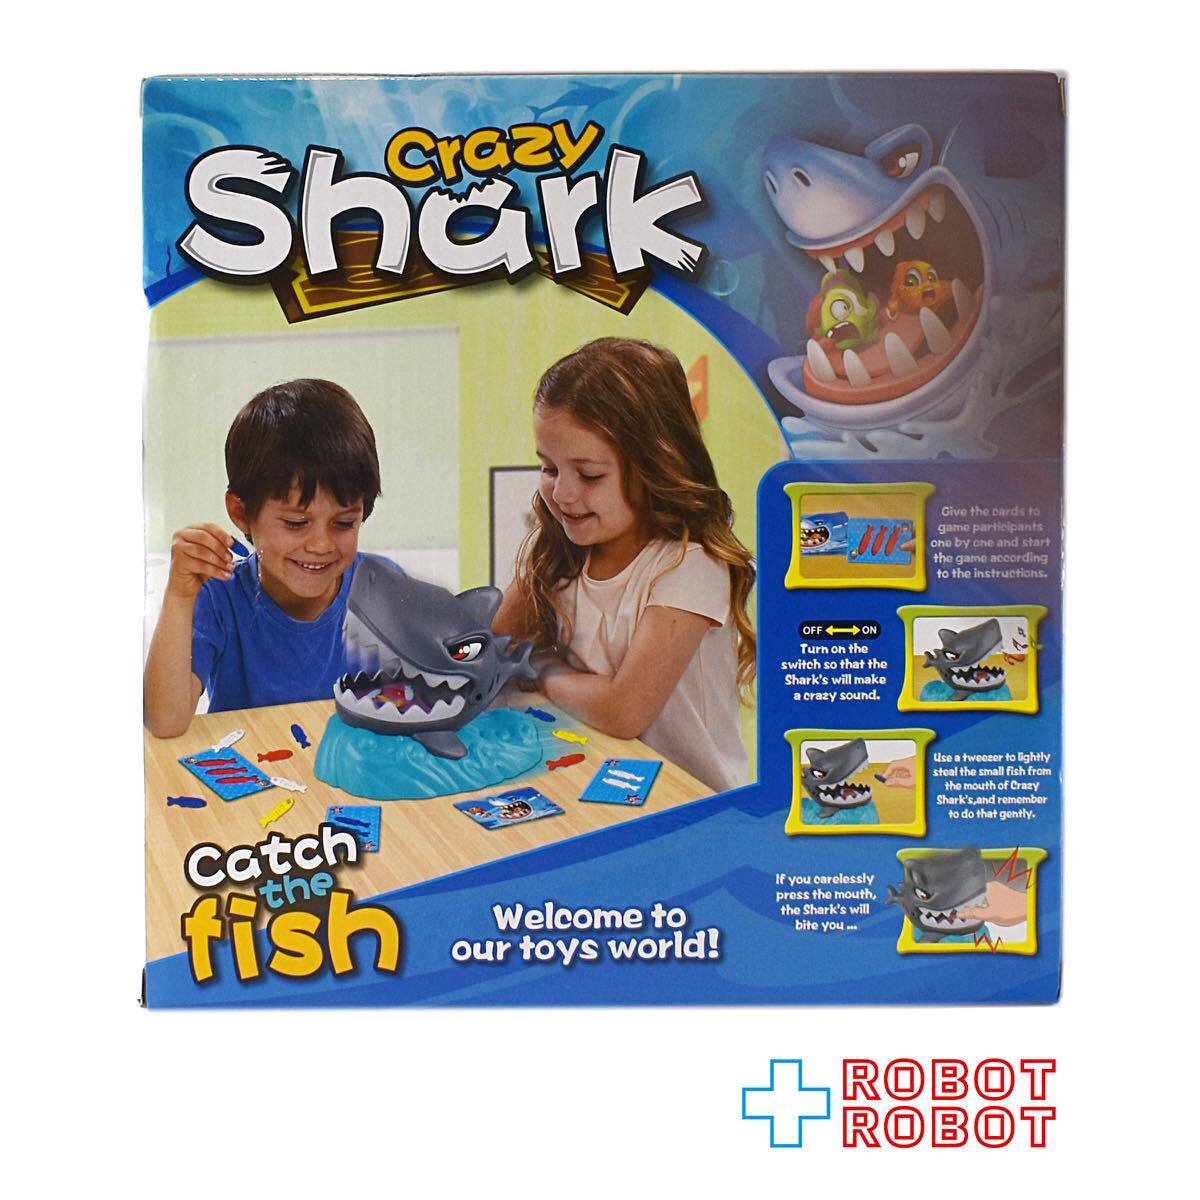 クレージーシャーク パニックゲーム パーティゲーム サメサメパニック おもちゃ